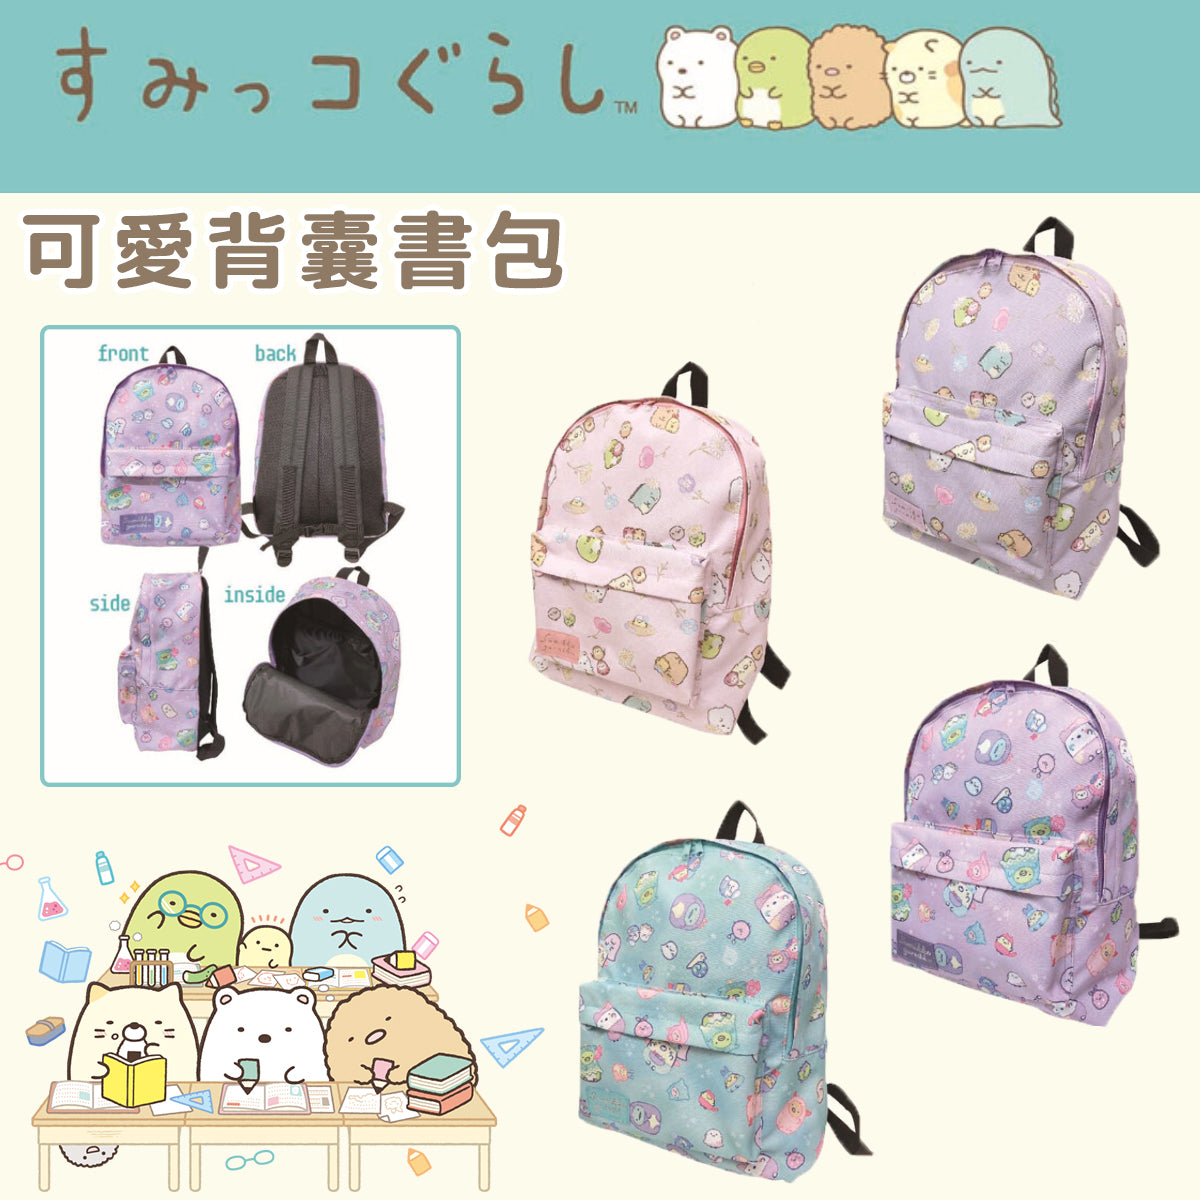 Backpack - Sumikko Gurashi (4 Styles) (Japan Edition)